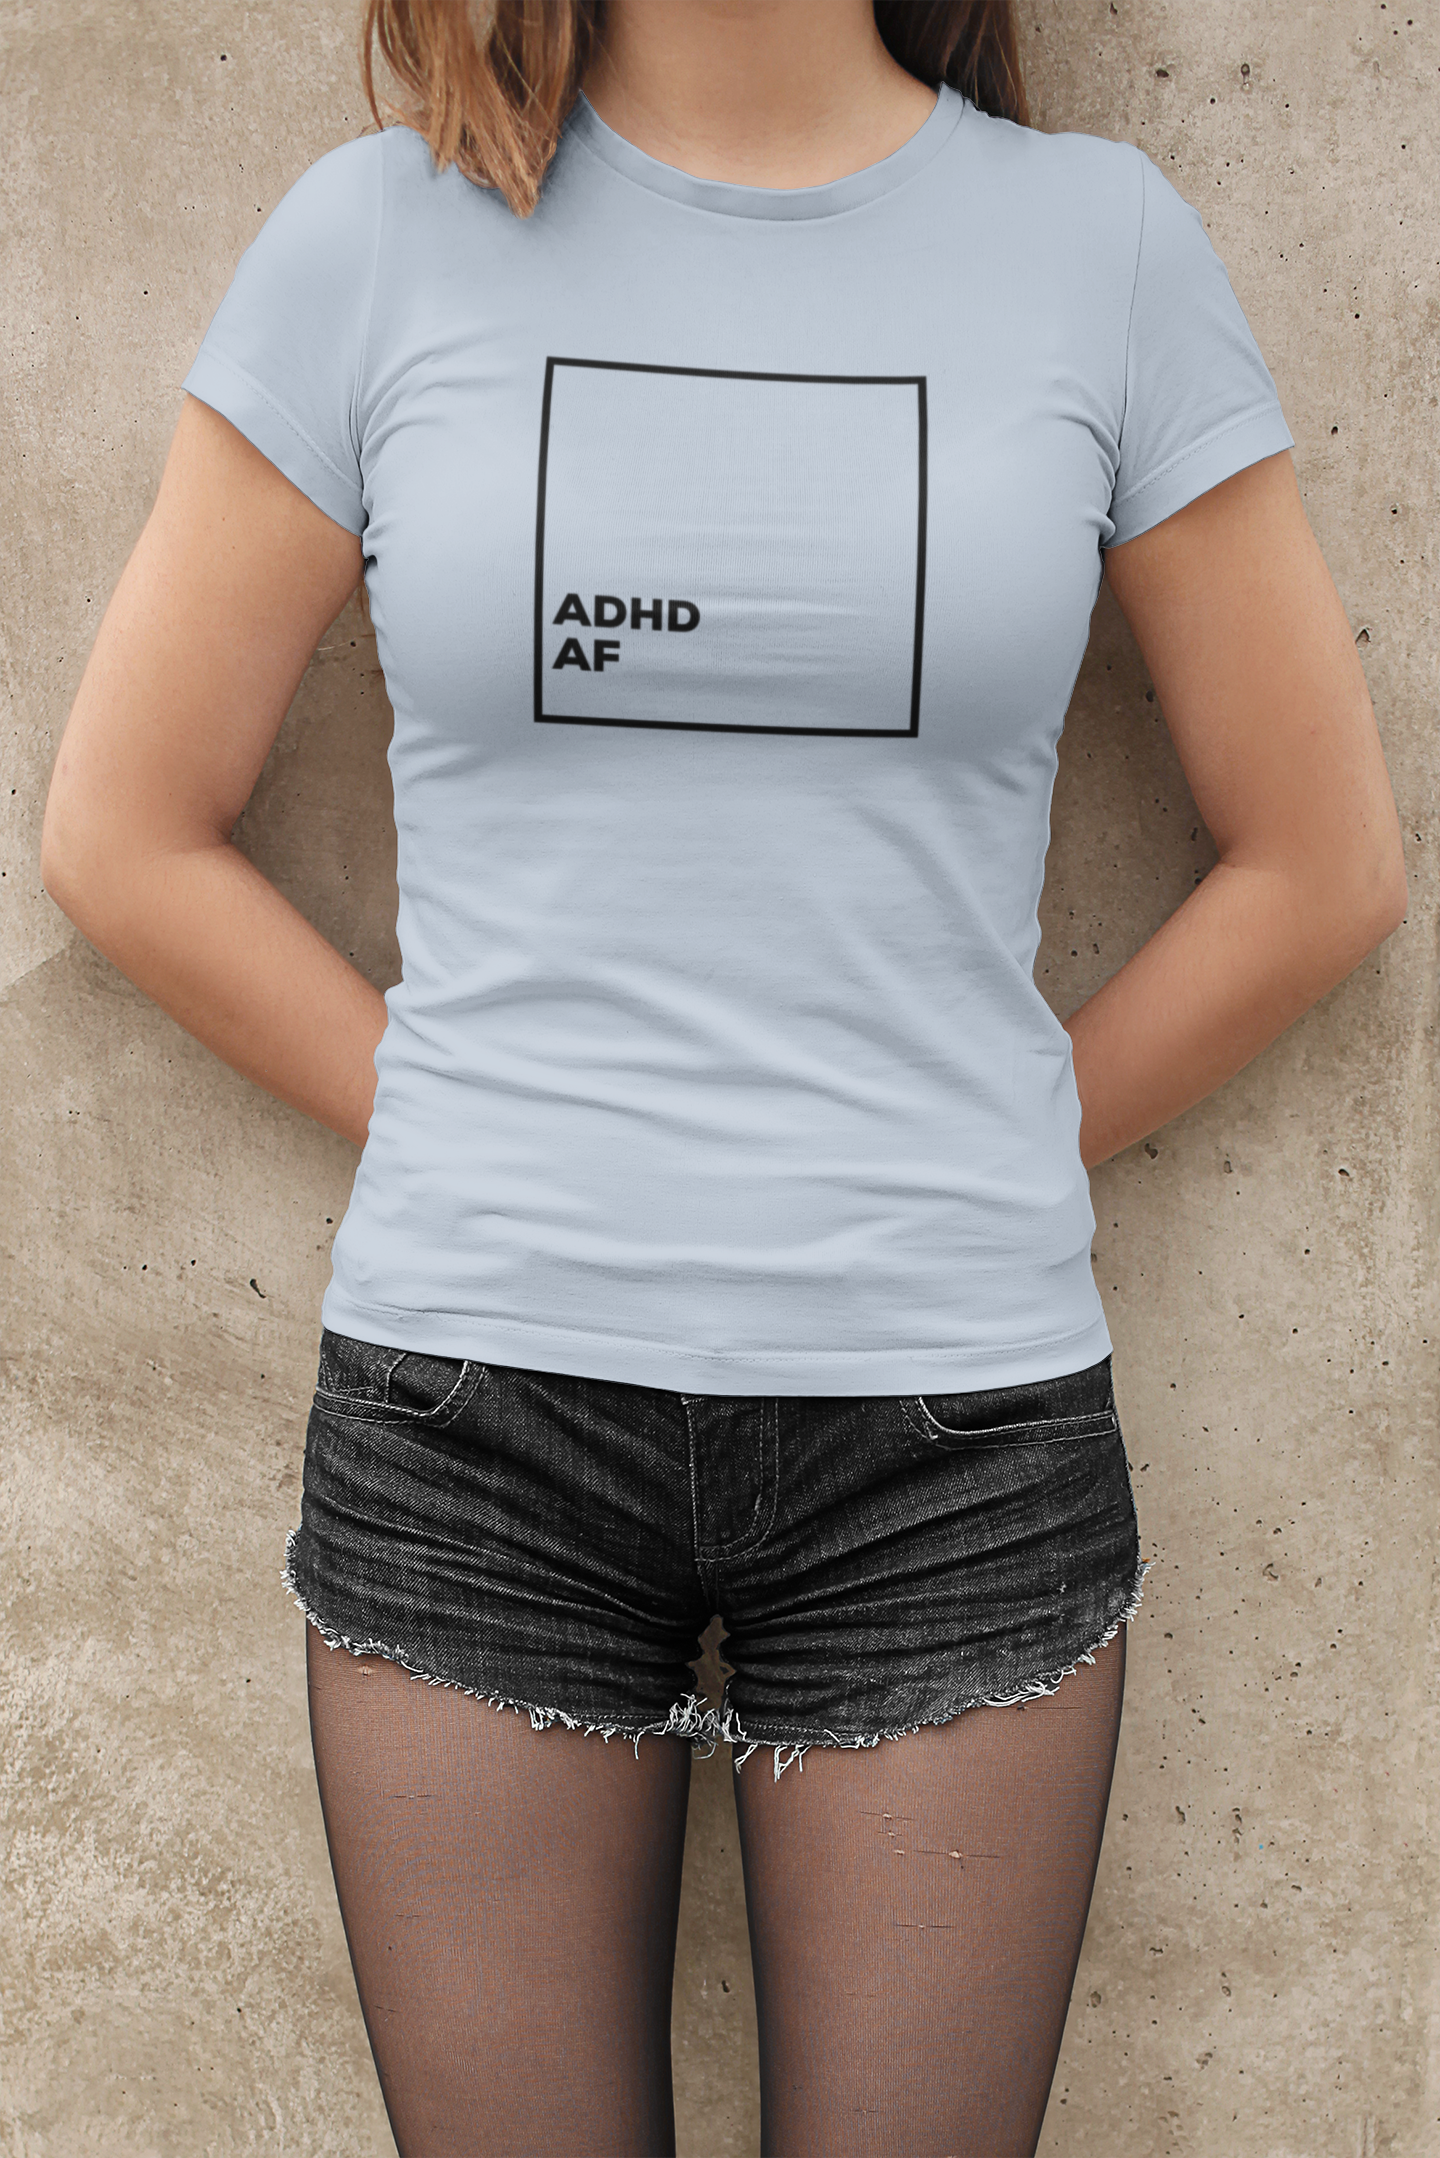 ADHD AF felnőtt póló az ADHD tudatosítás jegyében Zizegjünk.hu